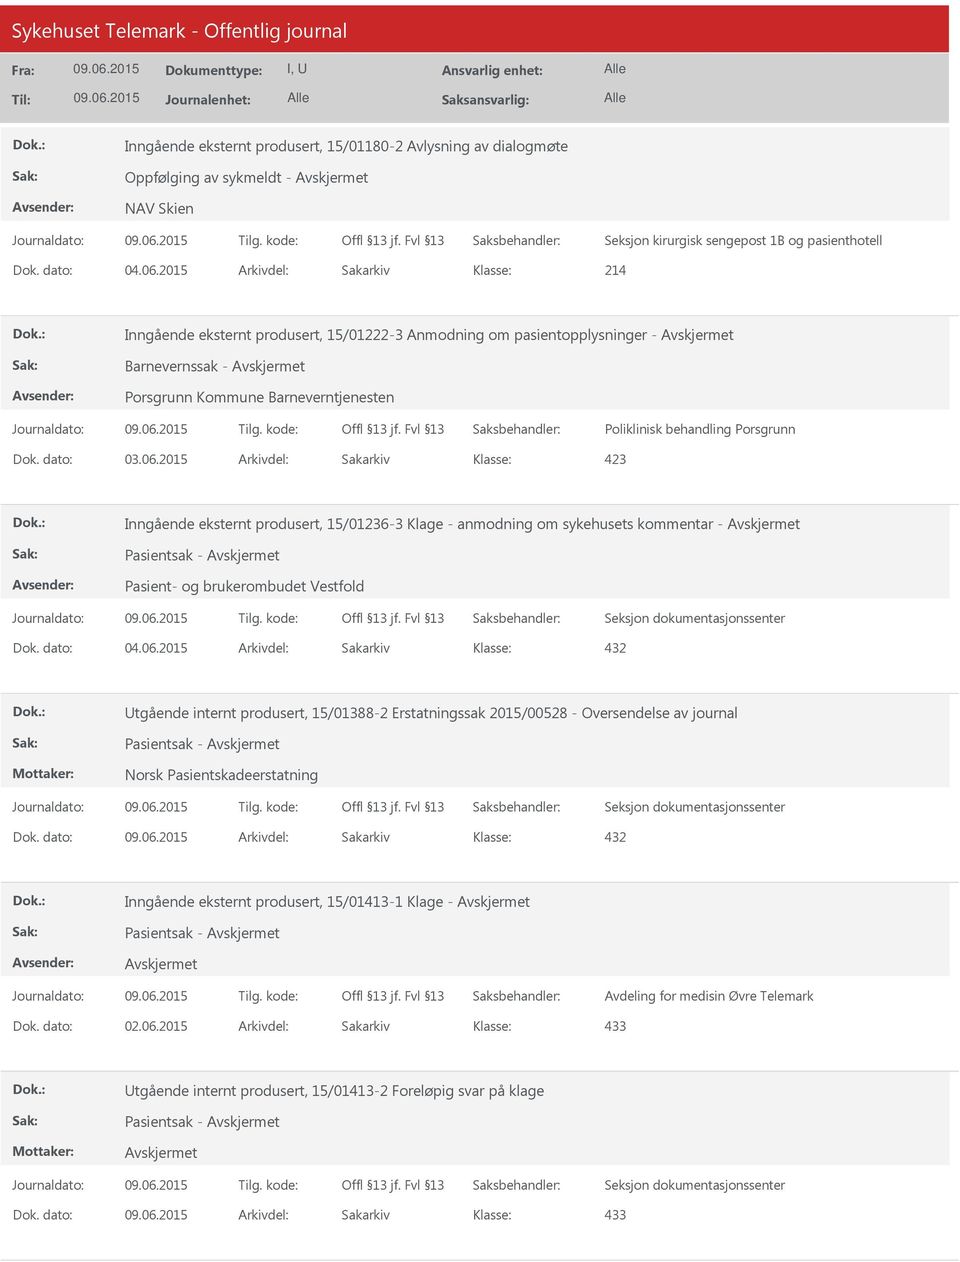 2015 Arkivdel: Sakarkiv Inngående eksternt produsert, 15/01236-3 Klage - anmodning om sykehusets kommentar - Pasientsak - Pasient- og brukerombudet Vestfold Utgående internt produsert, 15/01388-2